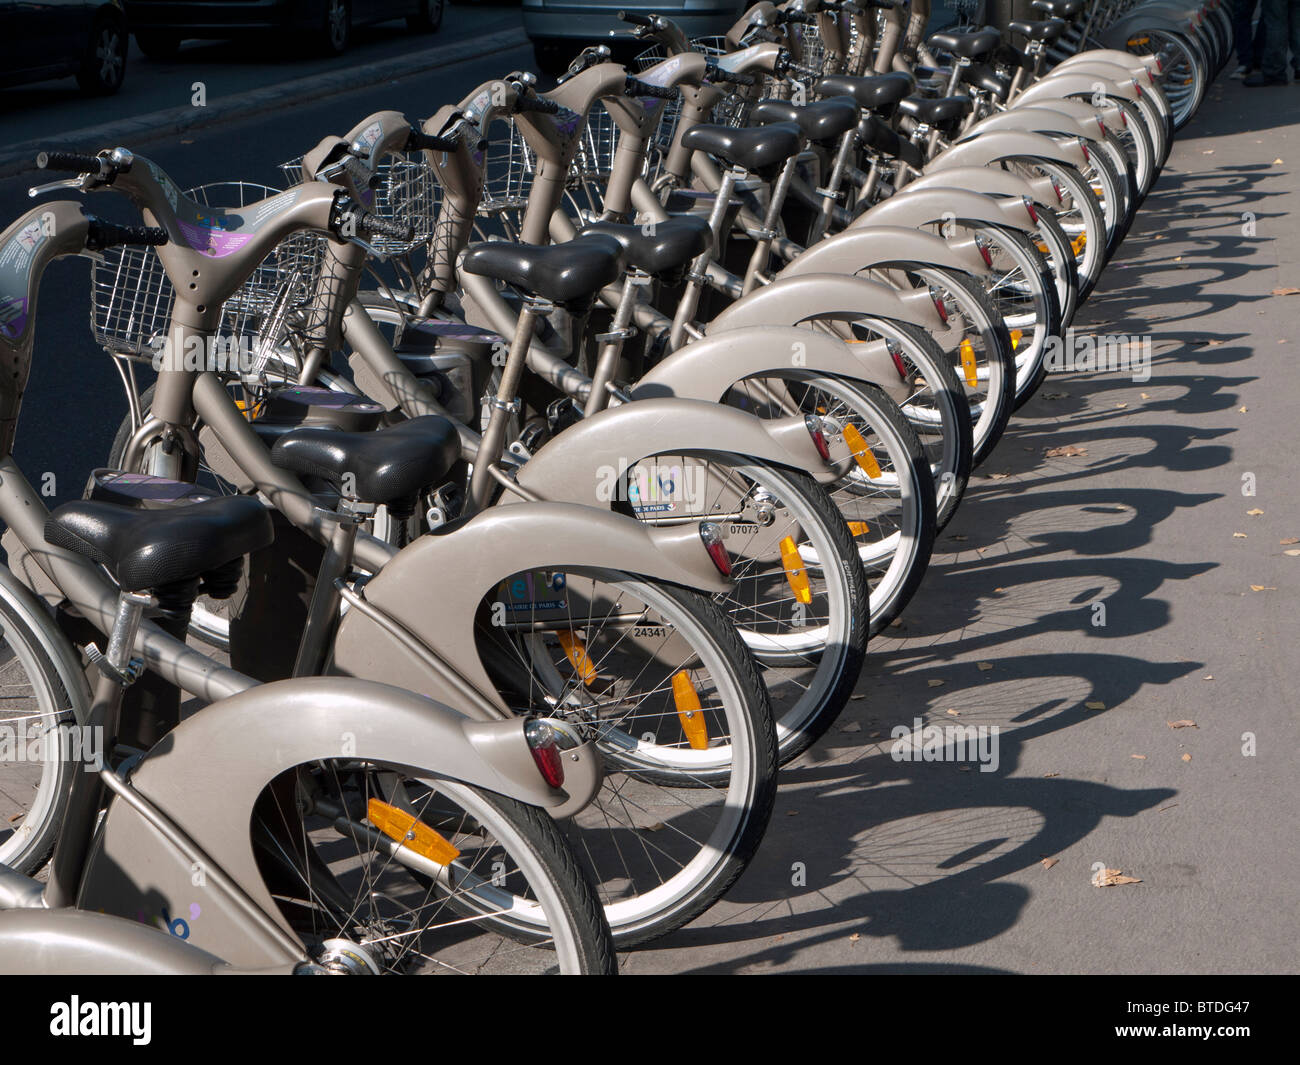 Rangée d'un service de location de vélos publique appelé Velib sur rue de Paris en France Banque D'Images